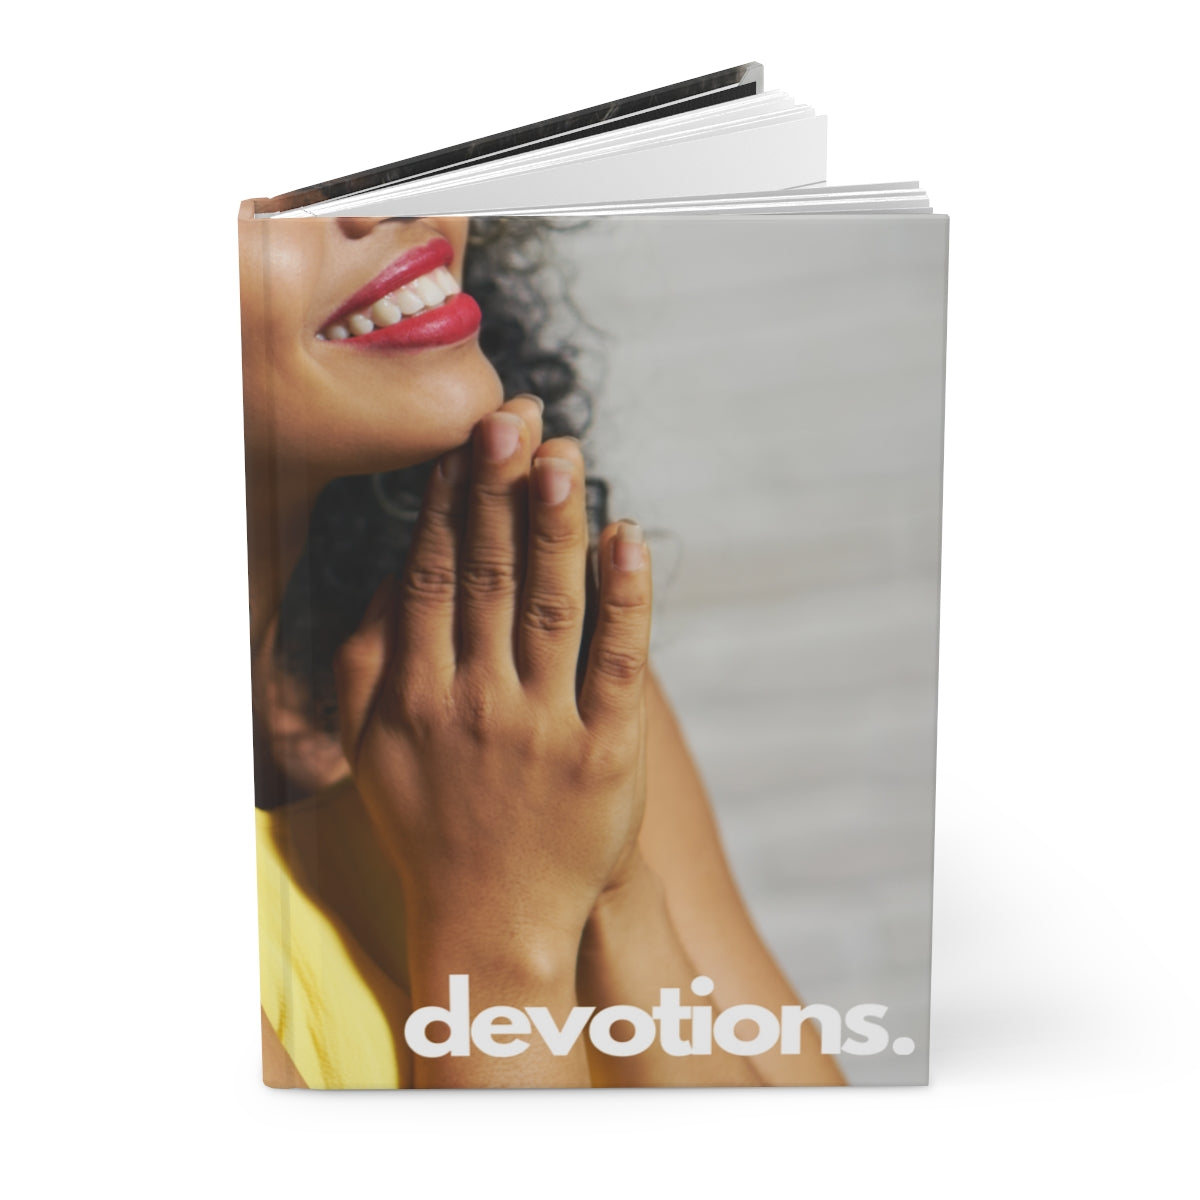 "devotions" Velvety Matte Hardcover Journal